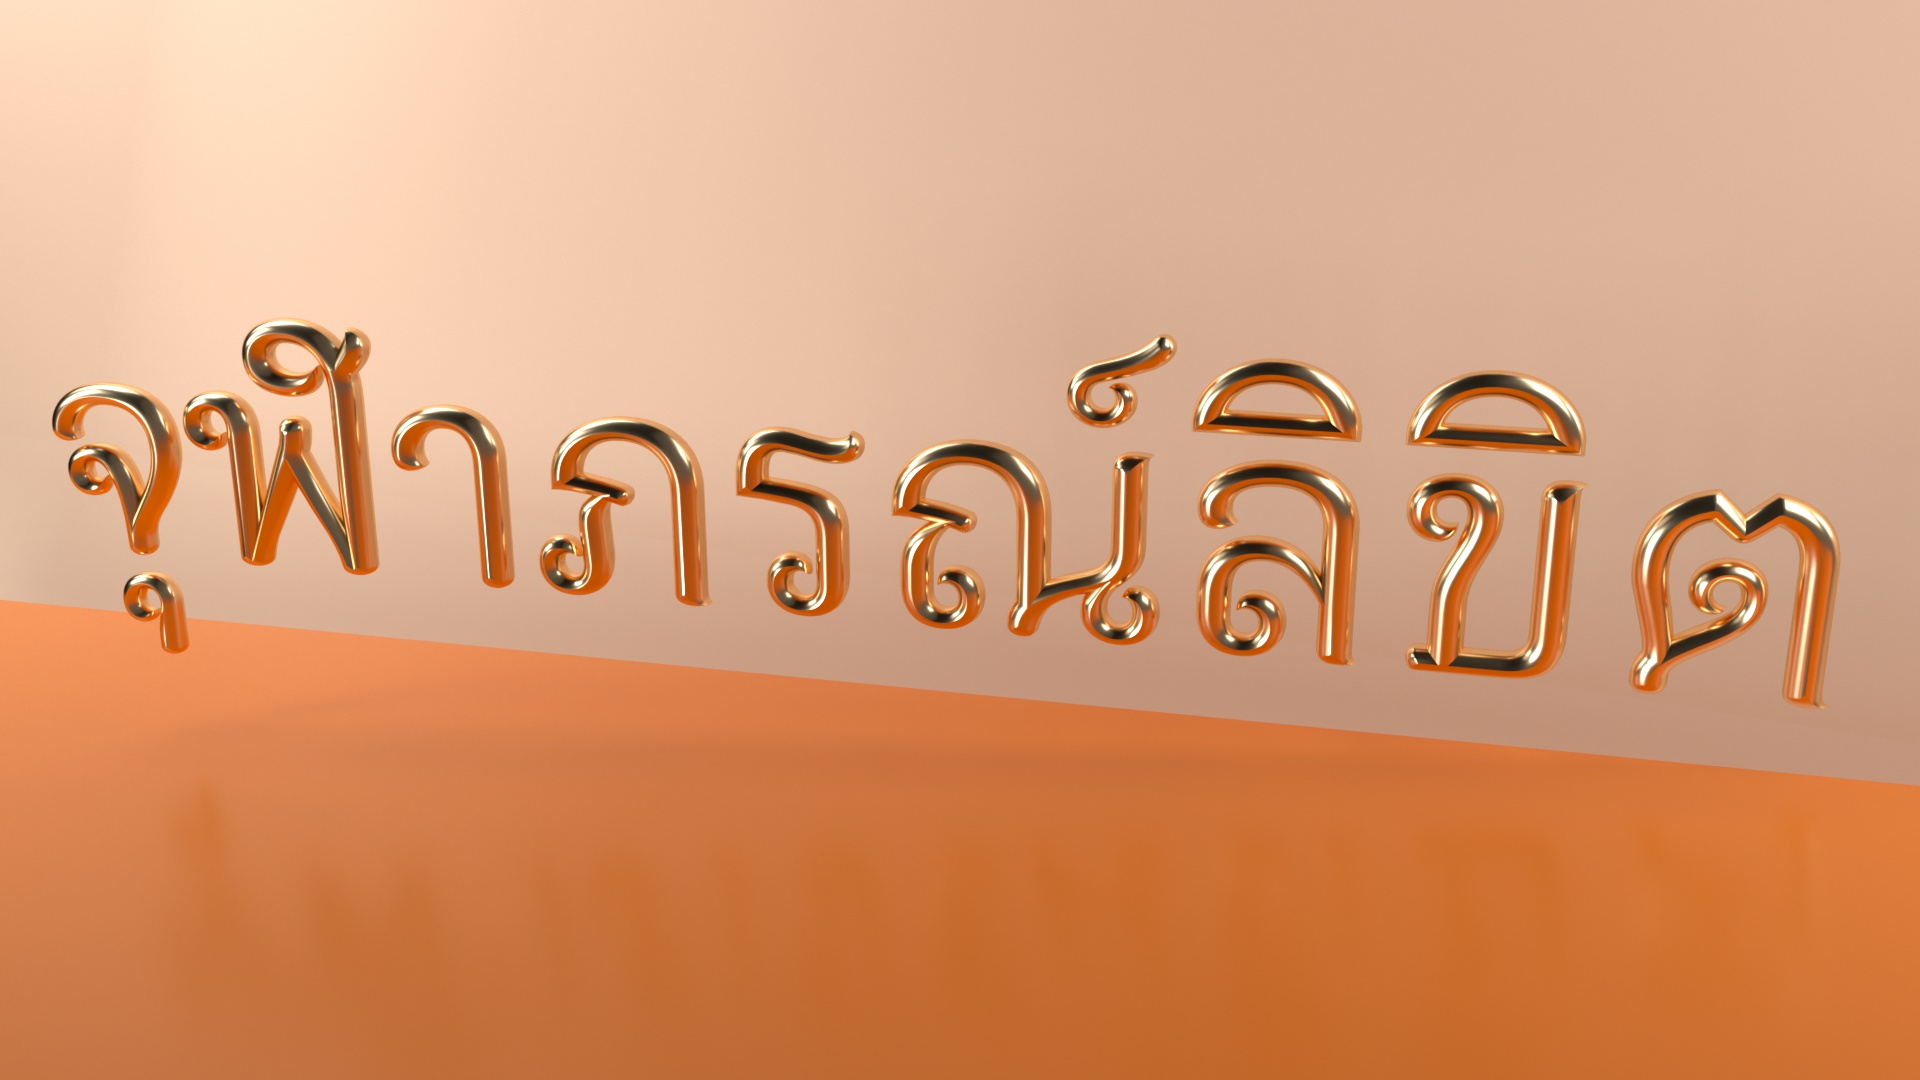 ครม. เคาะเพิ่ม “จุฬาภรณ์ลิขิต” เป็นฟอนต์มาตรฐานราชการไทย แบบที่ 14